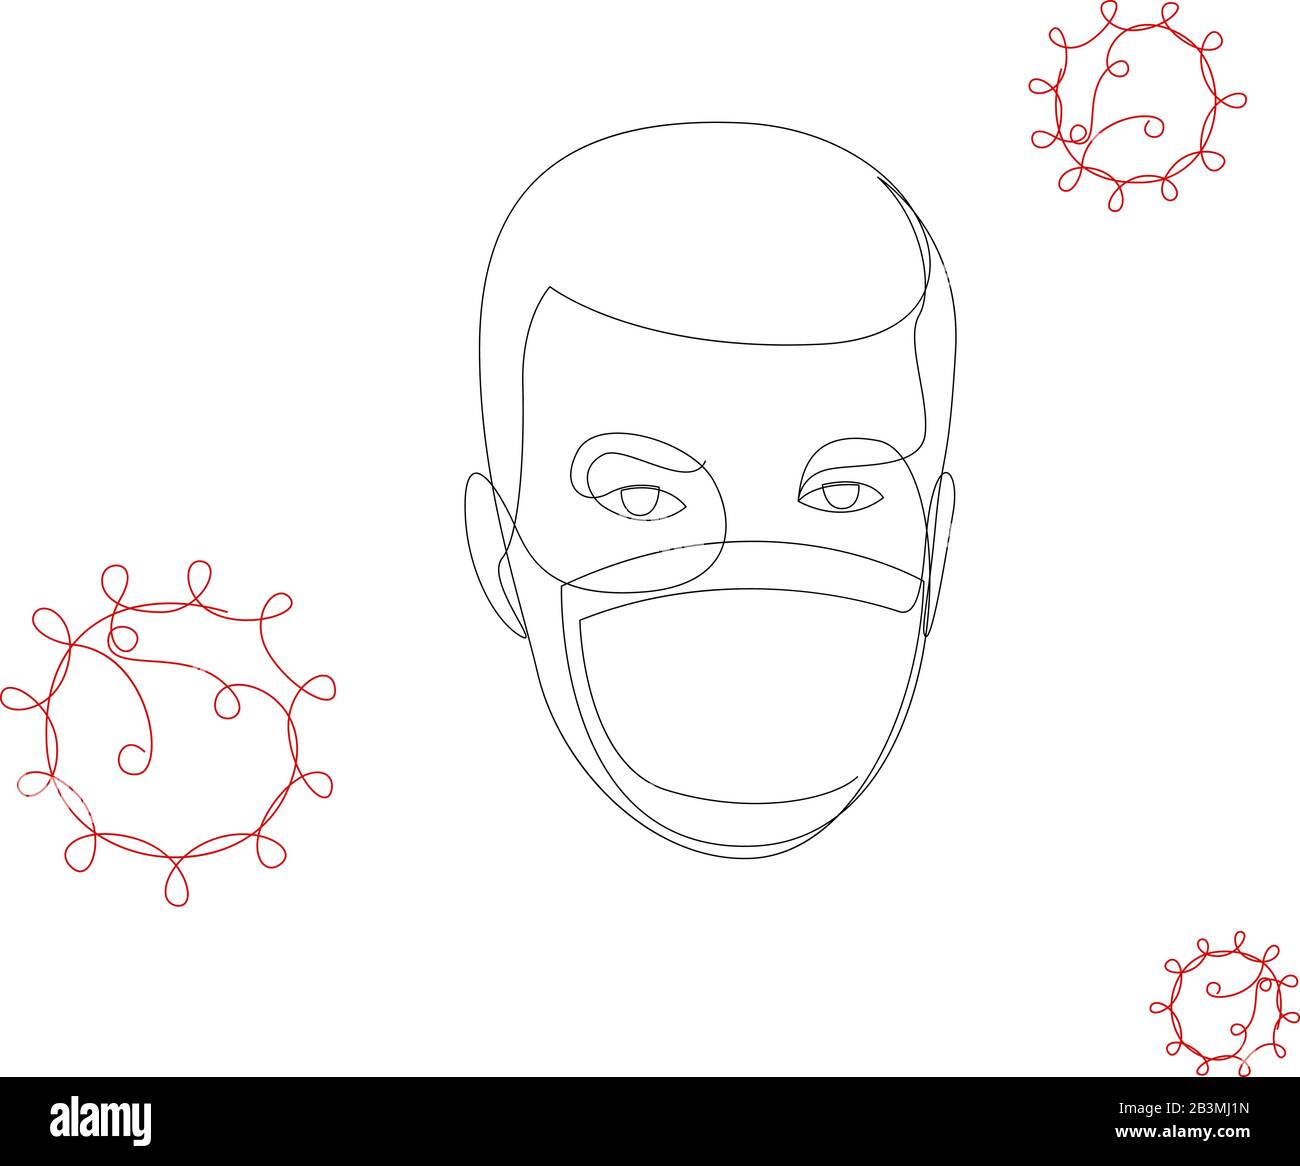 Un masque médical à dessin en ligne continu. Concept de coronavirus. Personne dessinée en continu dans le masque avec les icônes COVID-19. Une ligne dessinée à la main Illustration de Vecteur